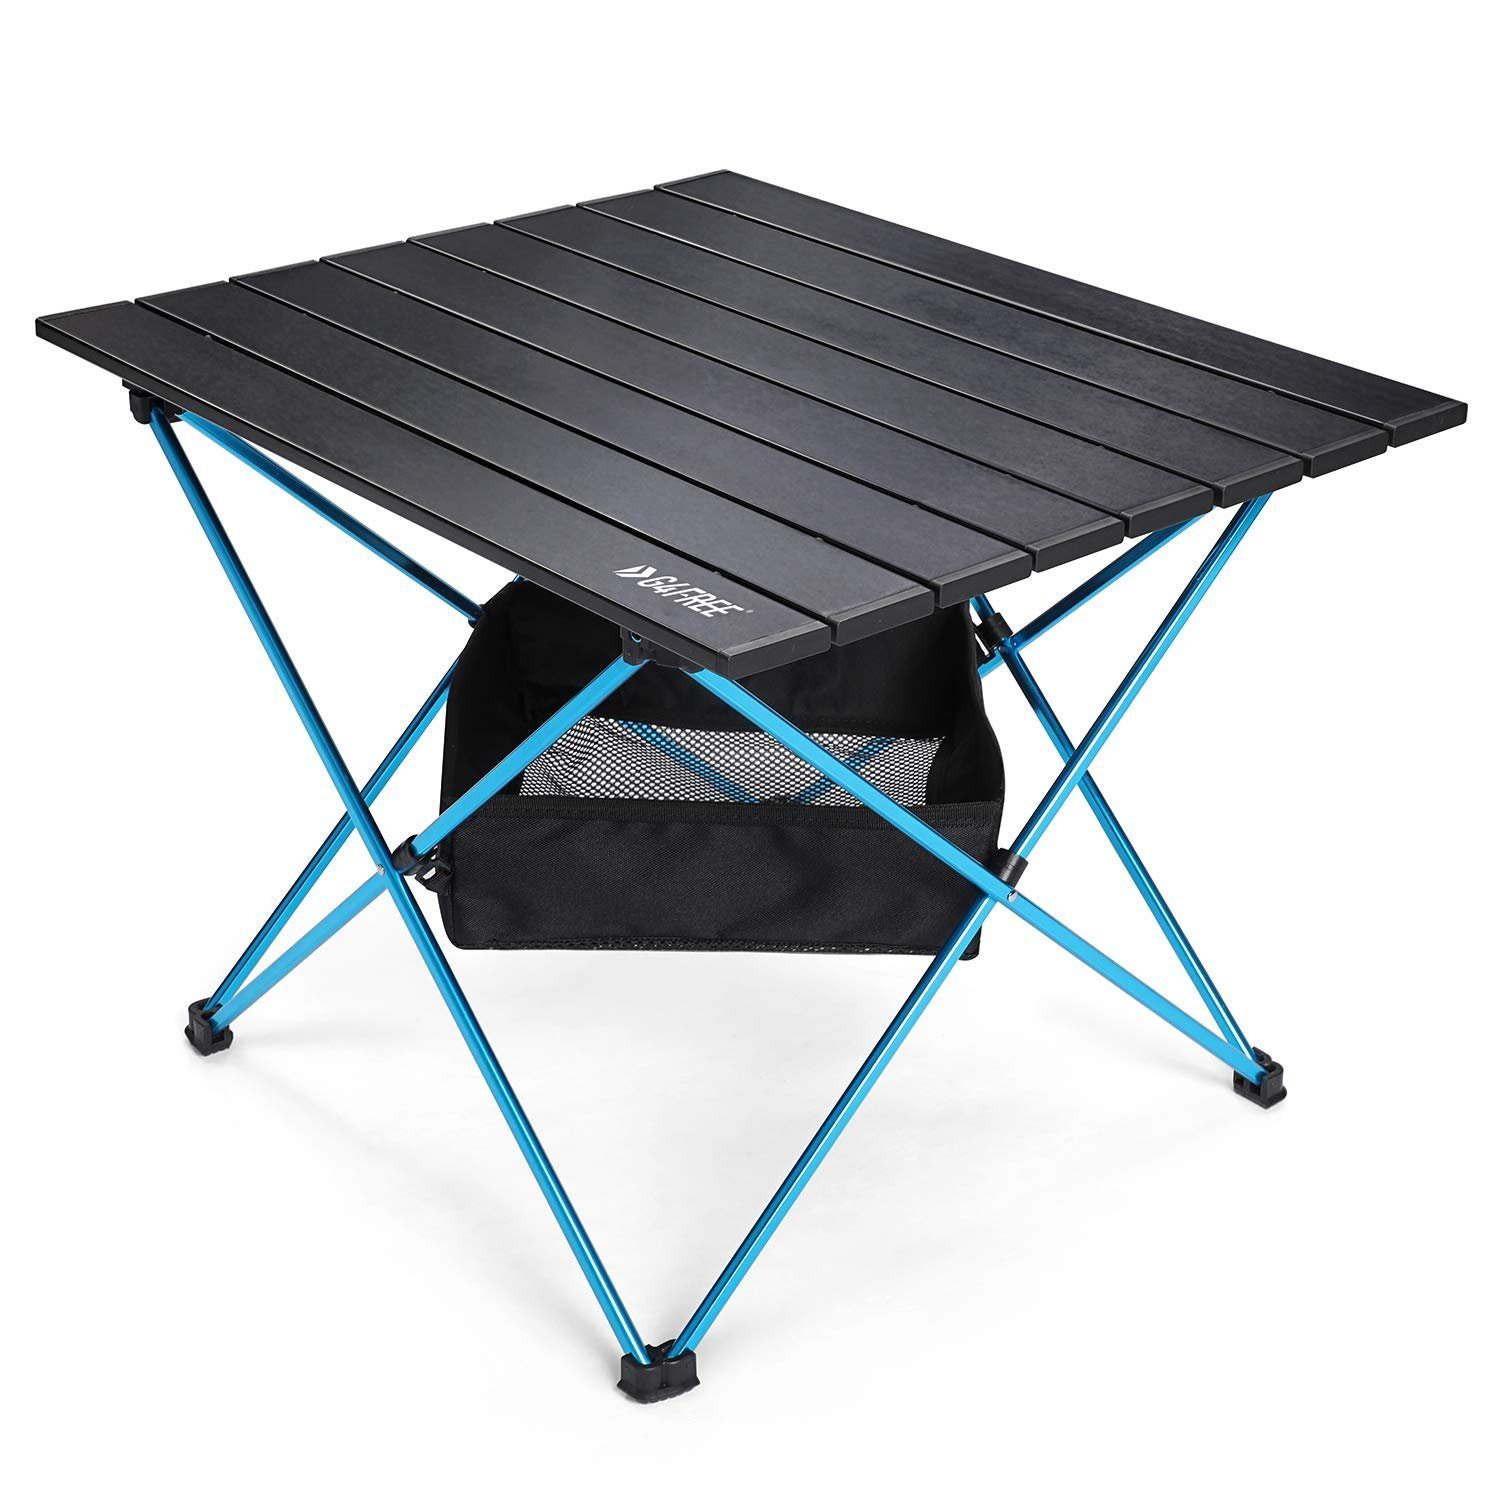 Tragbar Klapptisch Aluminium Campingtisch Outdoor klappbar Tisch mit Tasche 